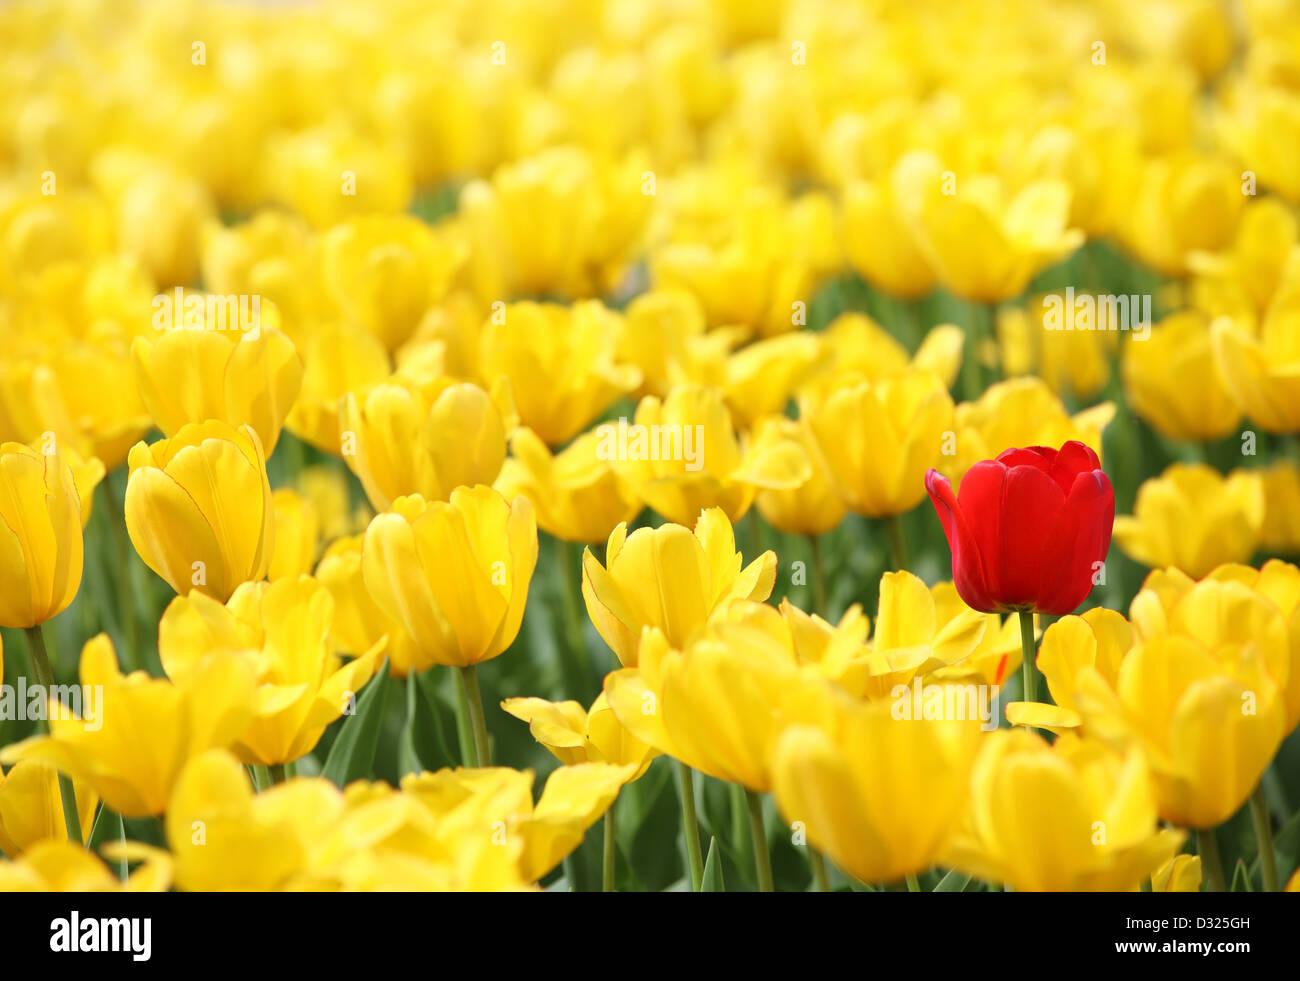 Tulipani gialli e uno rosso Foto Stock